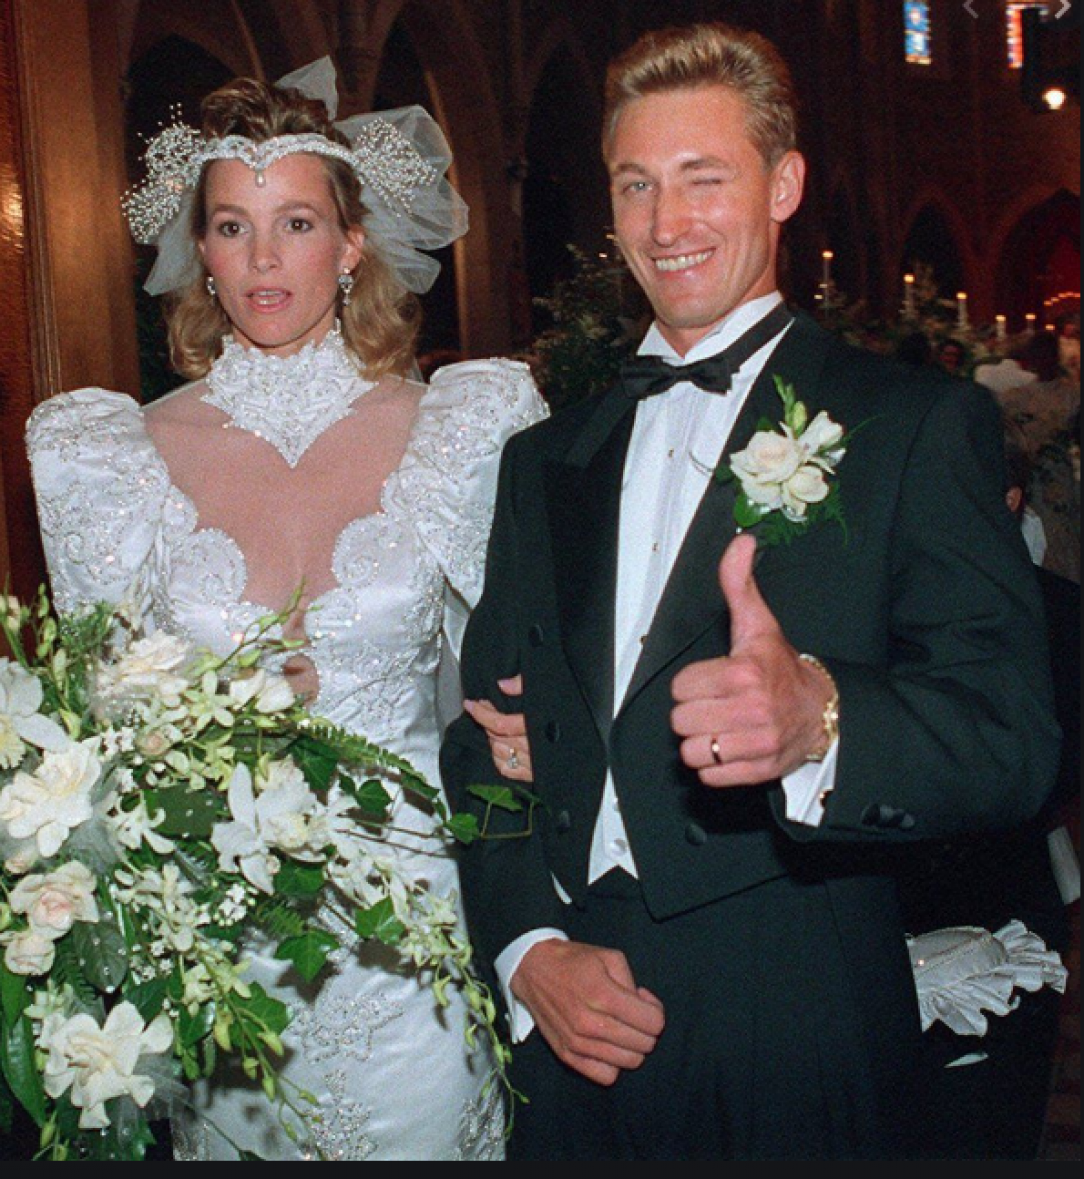 Wayne Gretzky and Janet Jones wedding